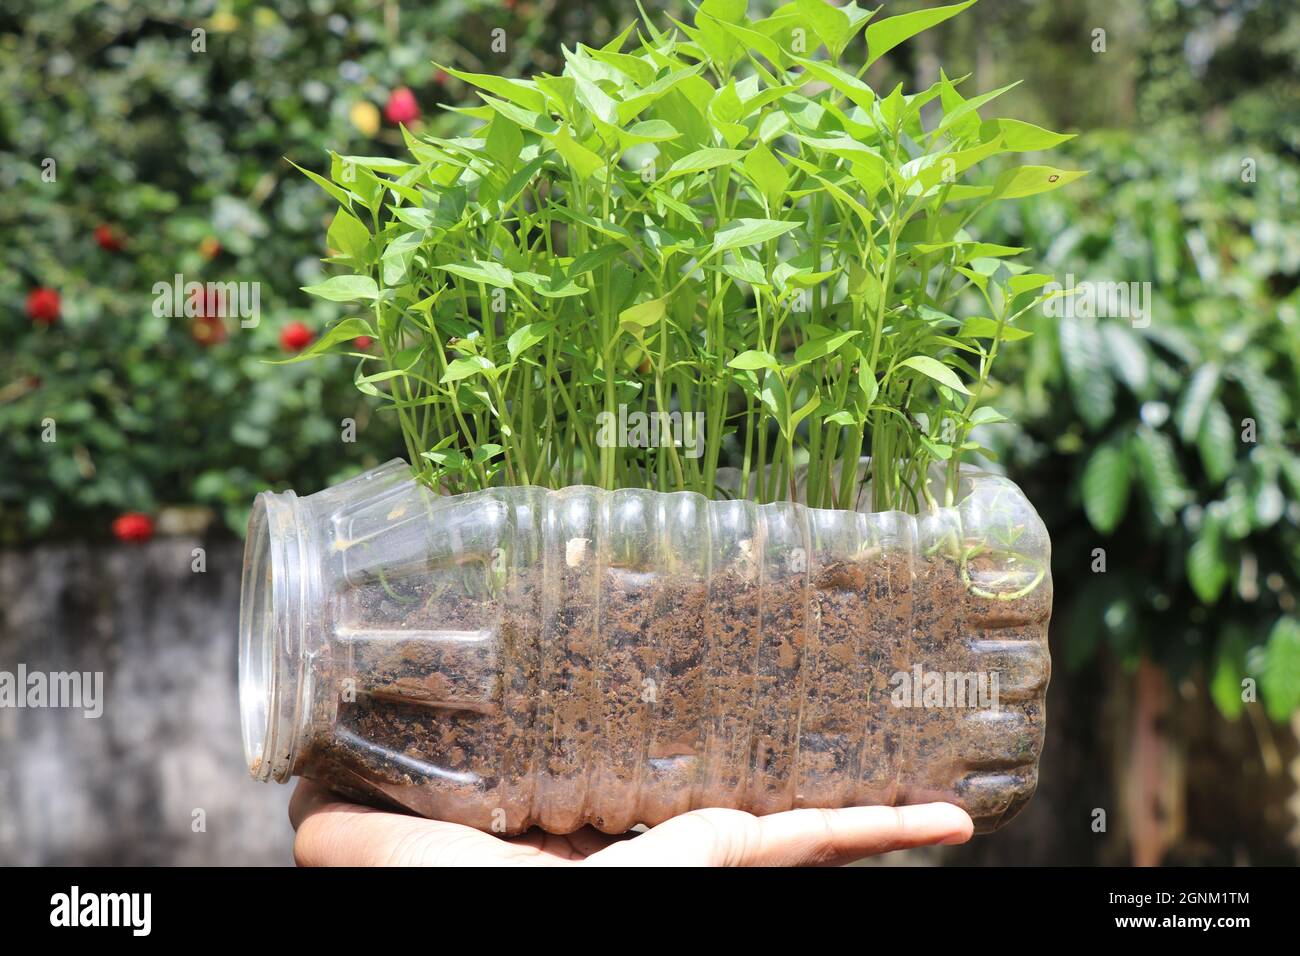 Plants de Chili cultivés sur une cuve en plastique recyclé, plantes fraîches et jeunes cultivées sur une cuve à déchets montrant le meilleur hors du concept de déchets Banque D'Images